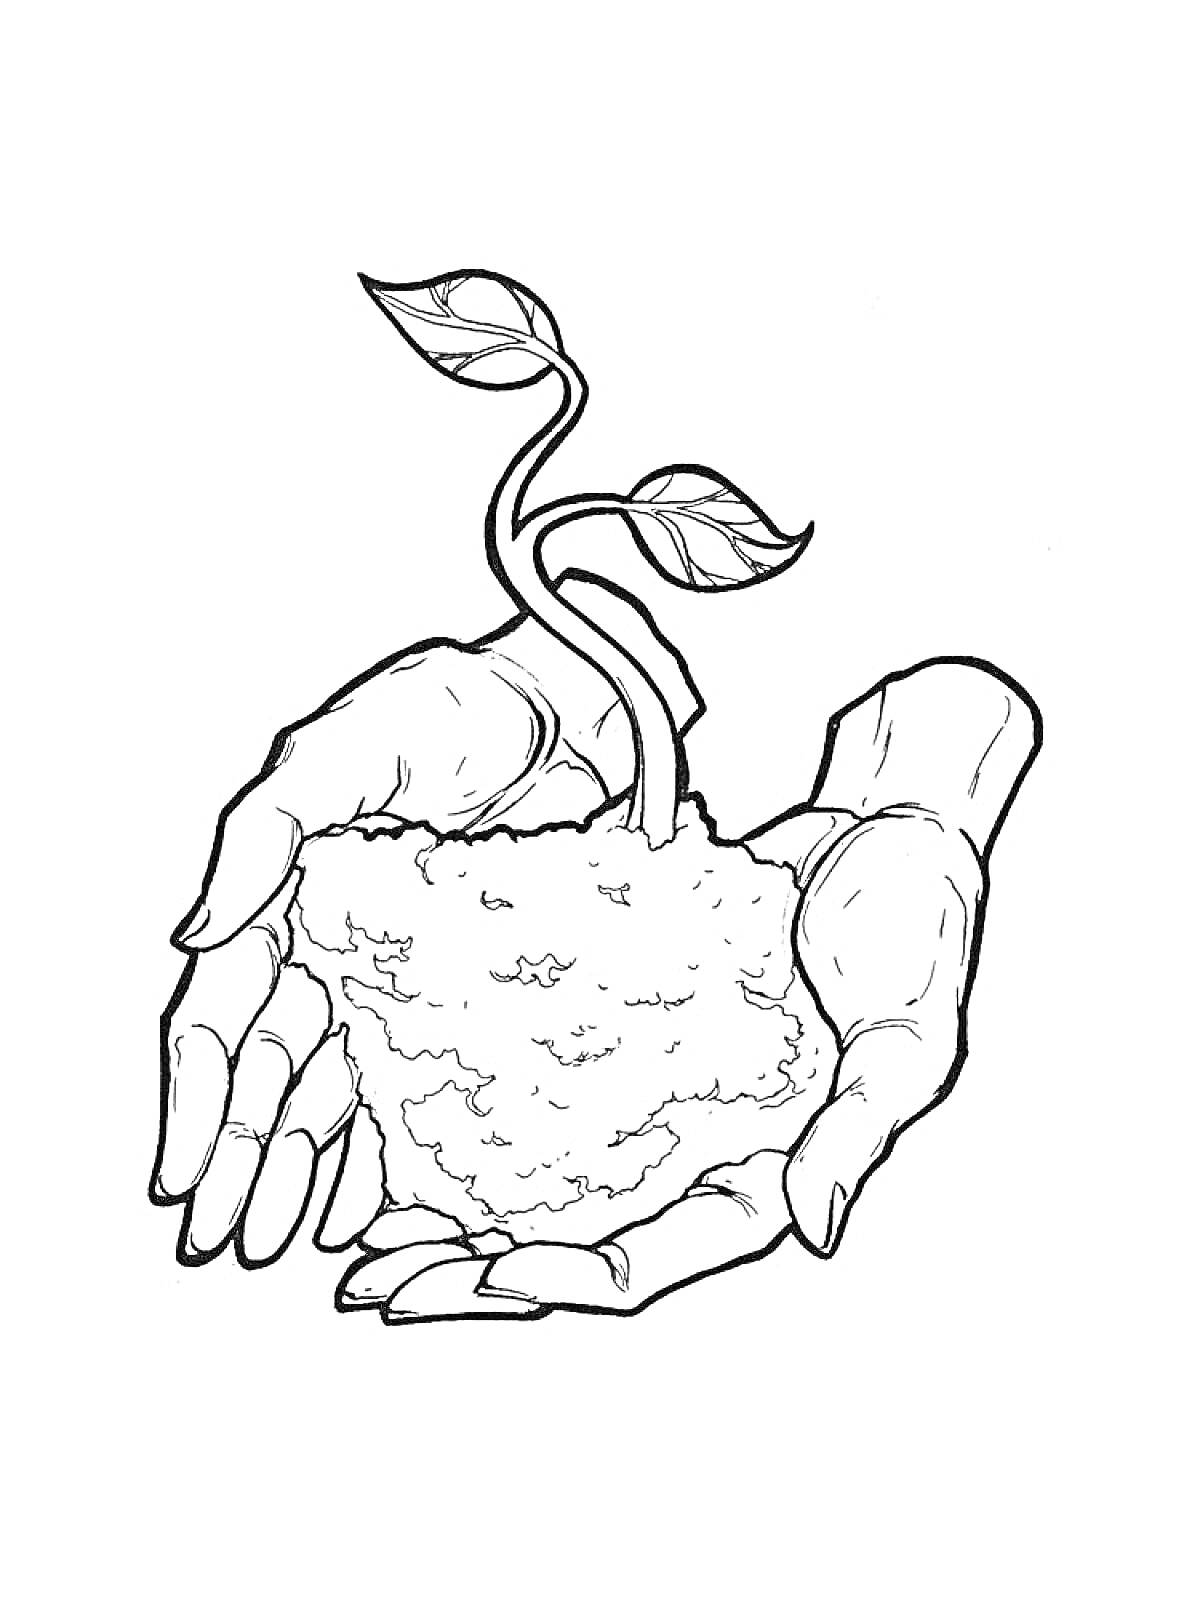 Рука, держащая росток с листьями и ком земли